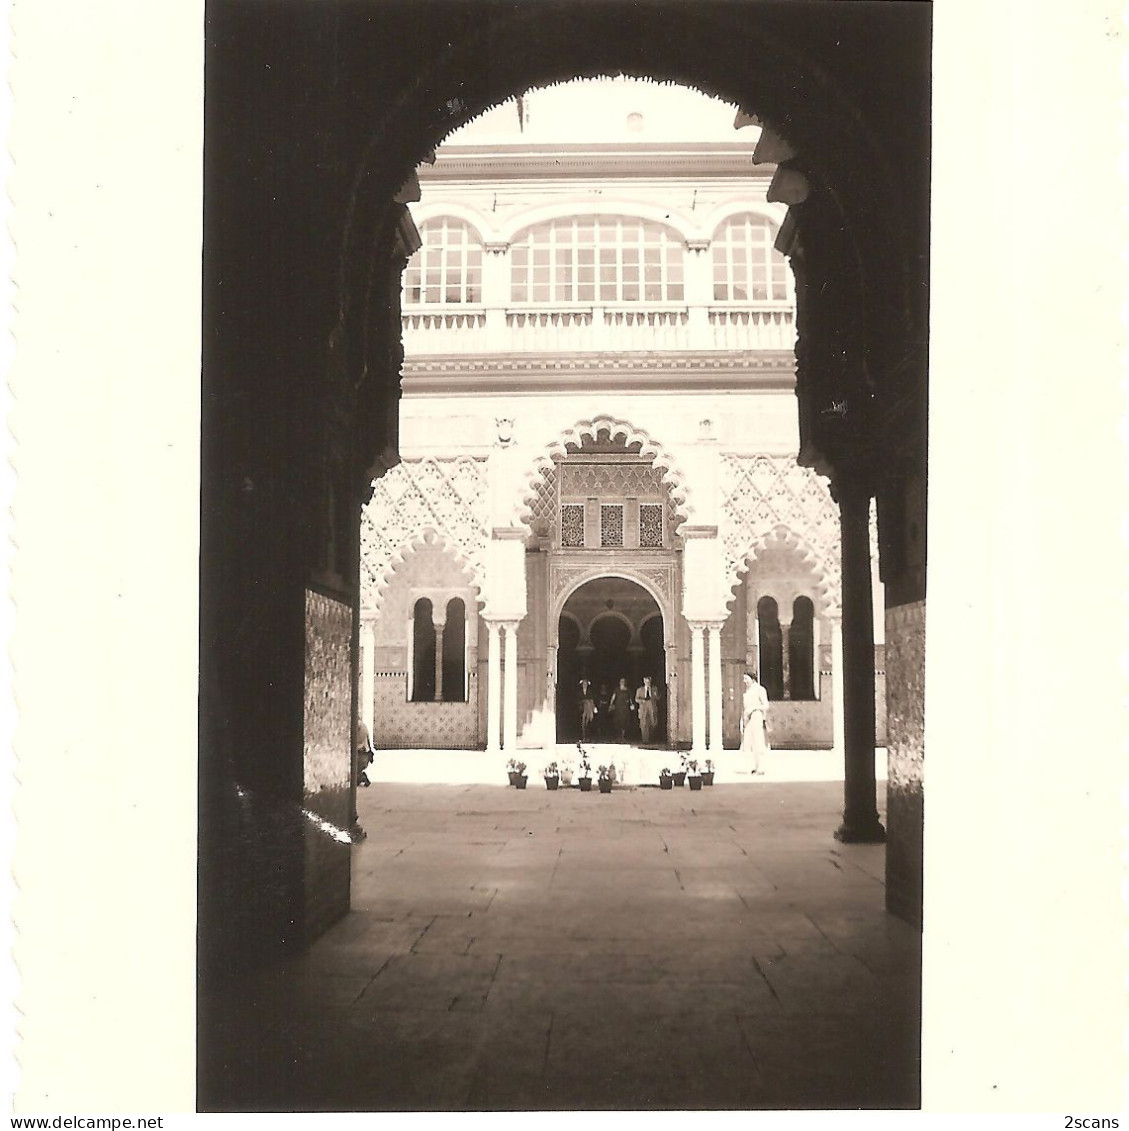 Espagne - SÉVILLE - SEVILLA - Lot De 4 Photographies 8,2 X 10,9 Cm Datées Août 1950 - ALHAMBRA - CATHÉDRALE - (photo) - Sevilla